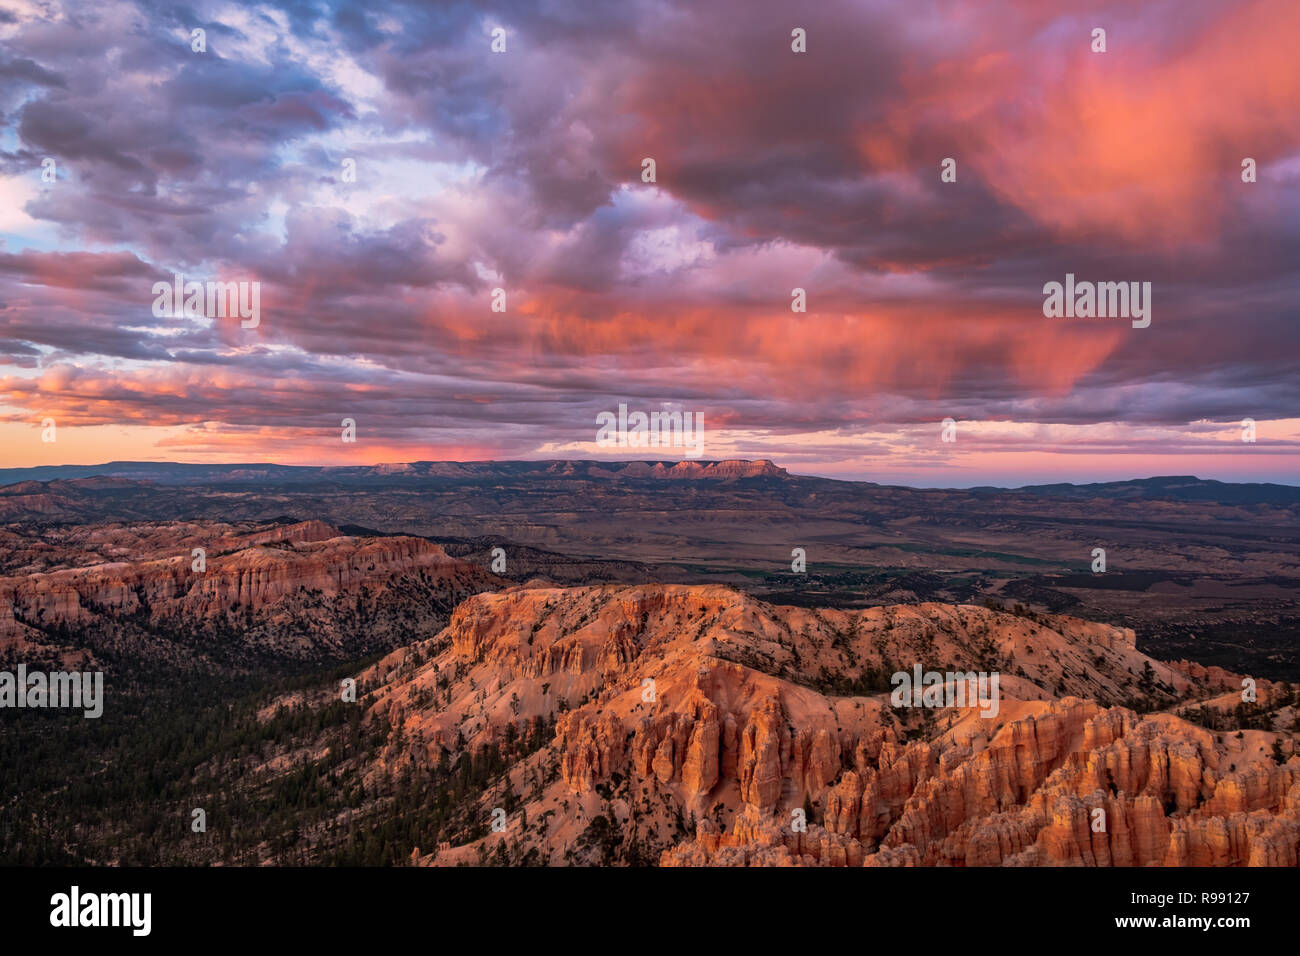 Spire geformten Felsen namens Hoodoos bei Sonnenaufgang/Sonnenuntergang von Inspiration Point, einem Aussichtspunkt im Bryce Canyon National Park in Utah, USA Stockfoto